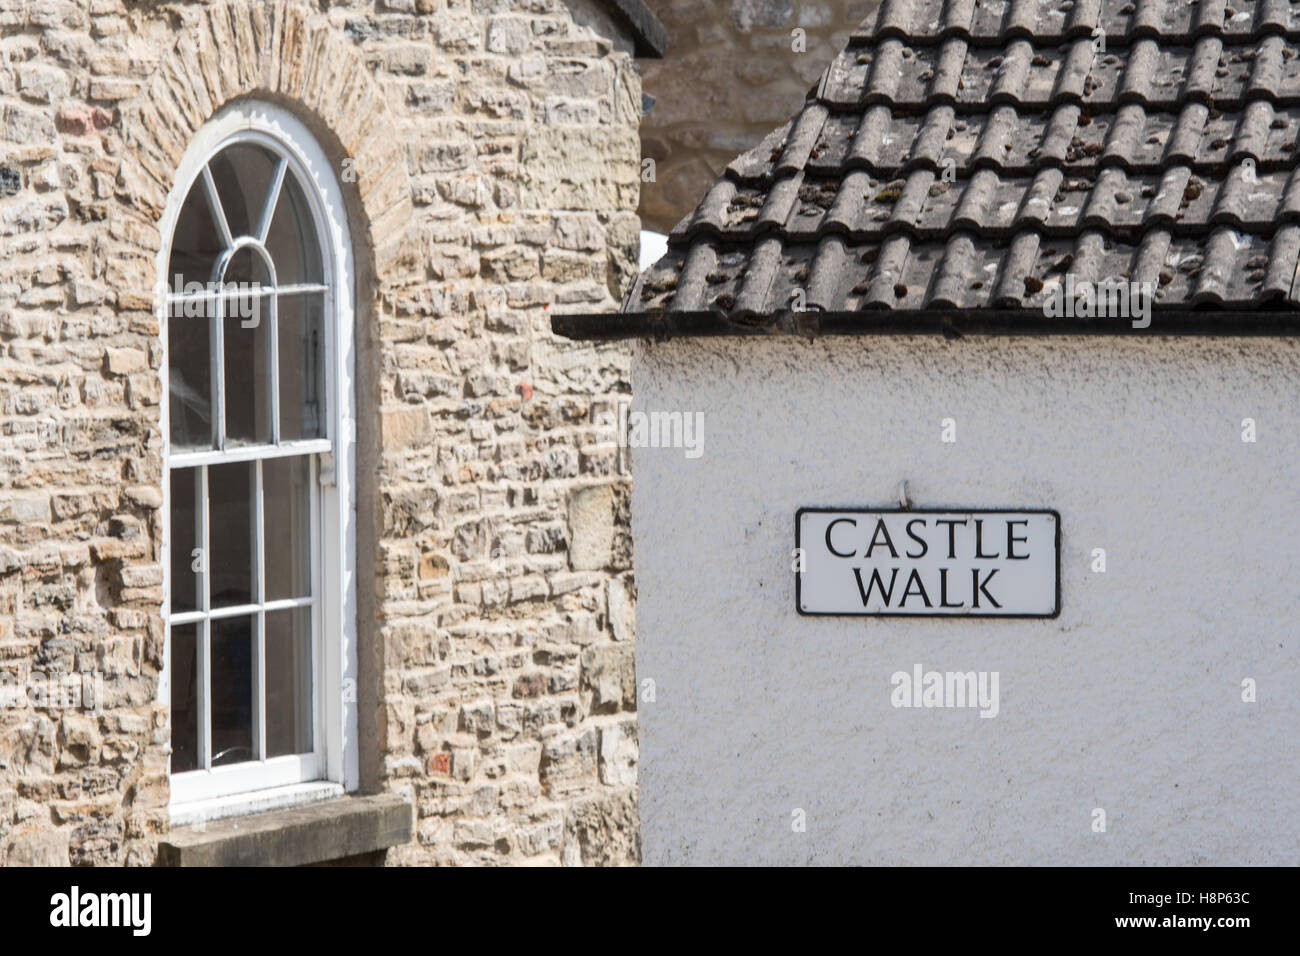 Regno Unito, Inghilterra, Yorkshire, Richmond - Dettaglio di una vecchia finestra di pietra su un edificio e un segno per il castello a piedi nella città di Richmon Foto Stock